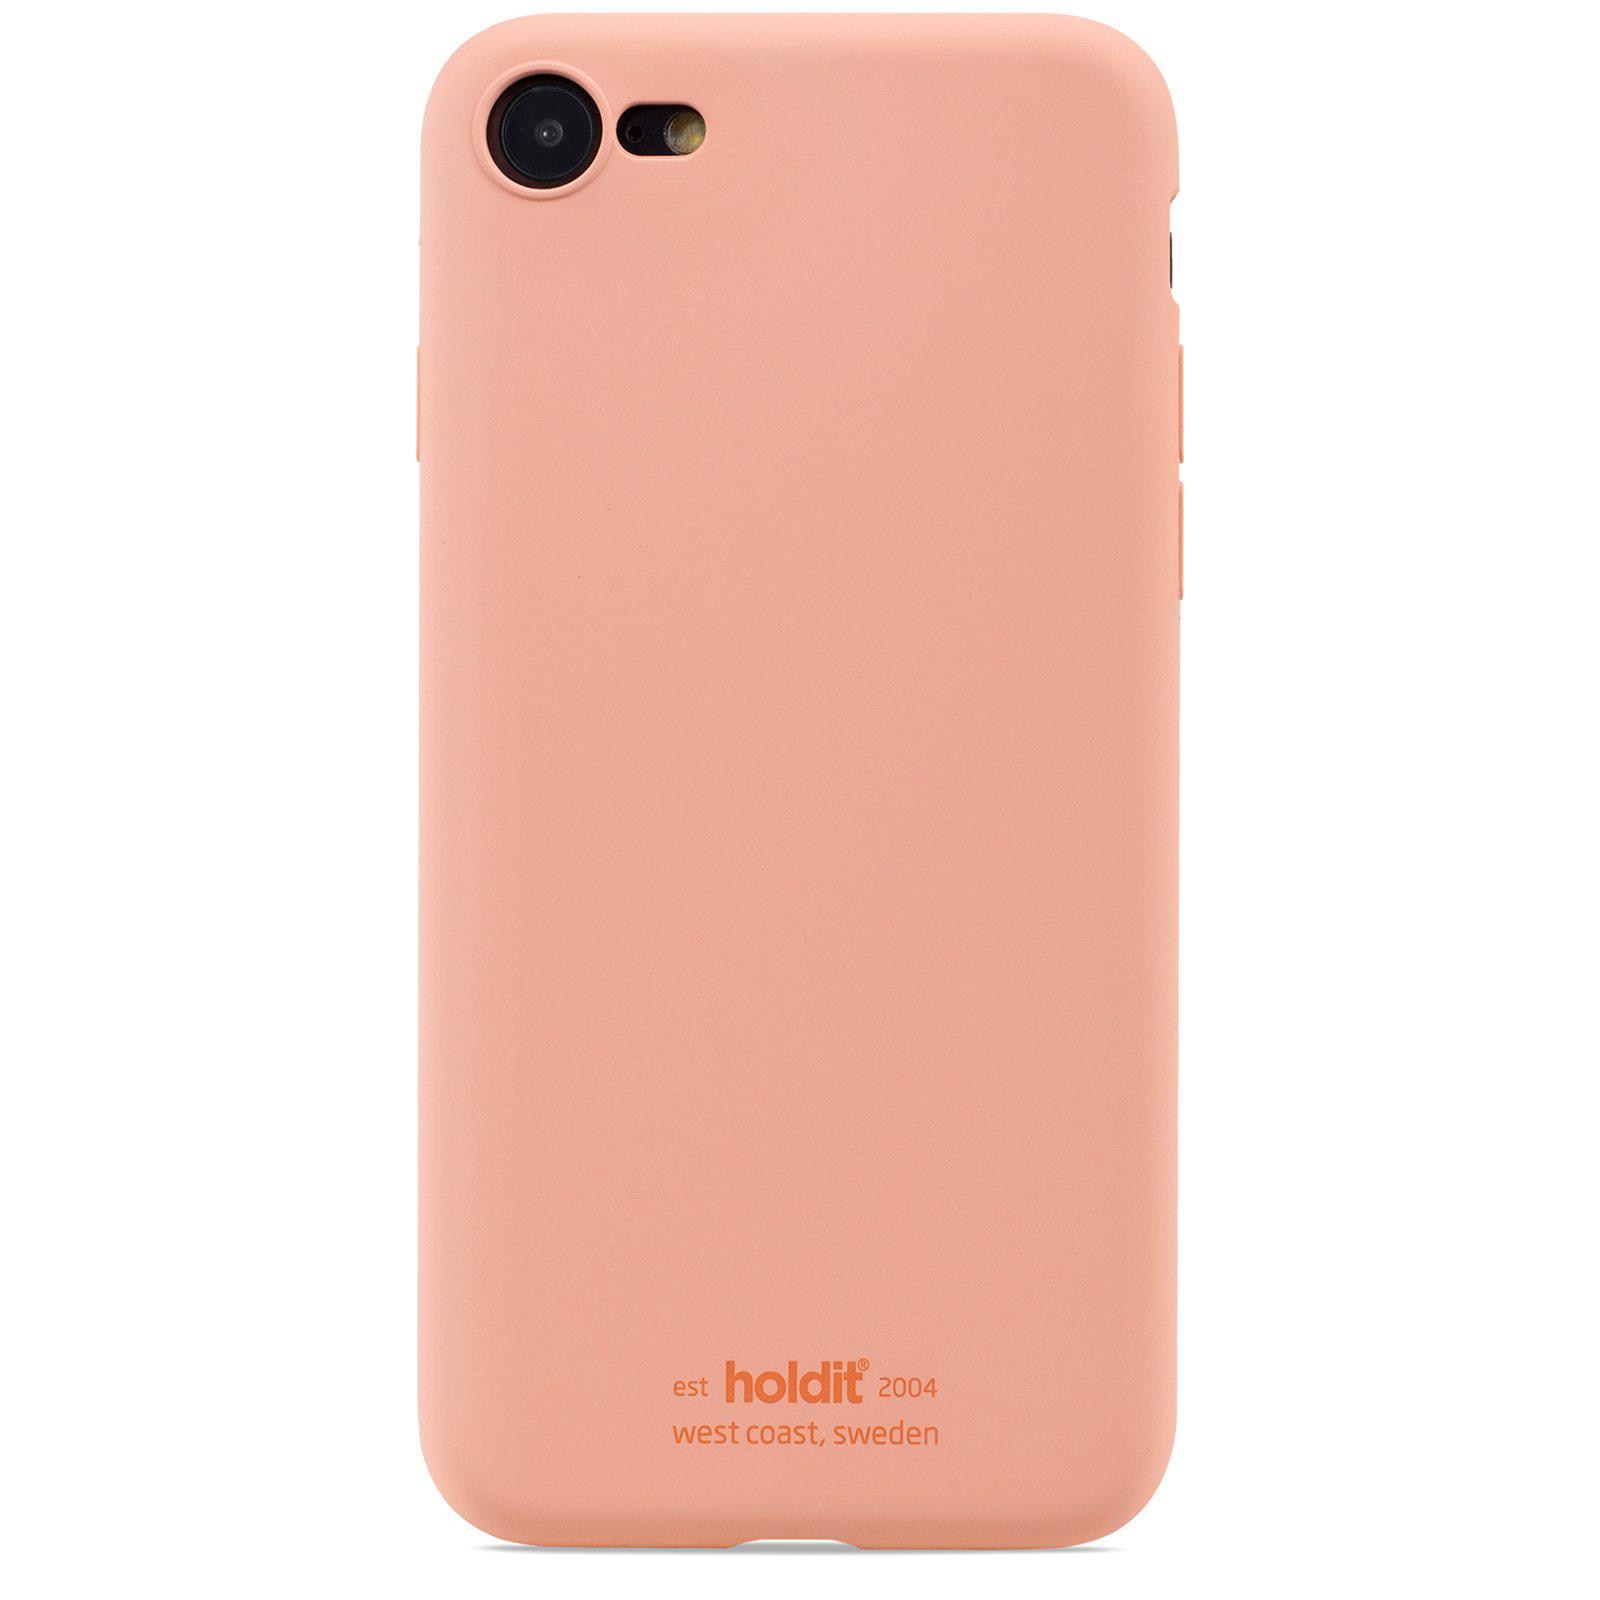 Silikonhülle iPhone 7/8/SE Pink Peach